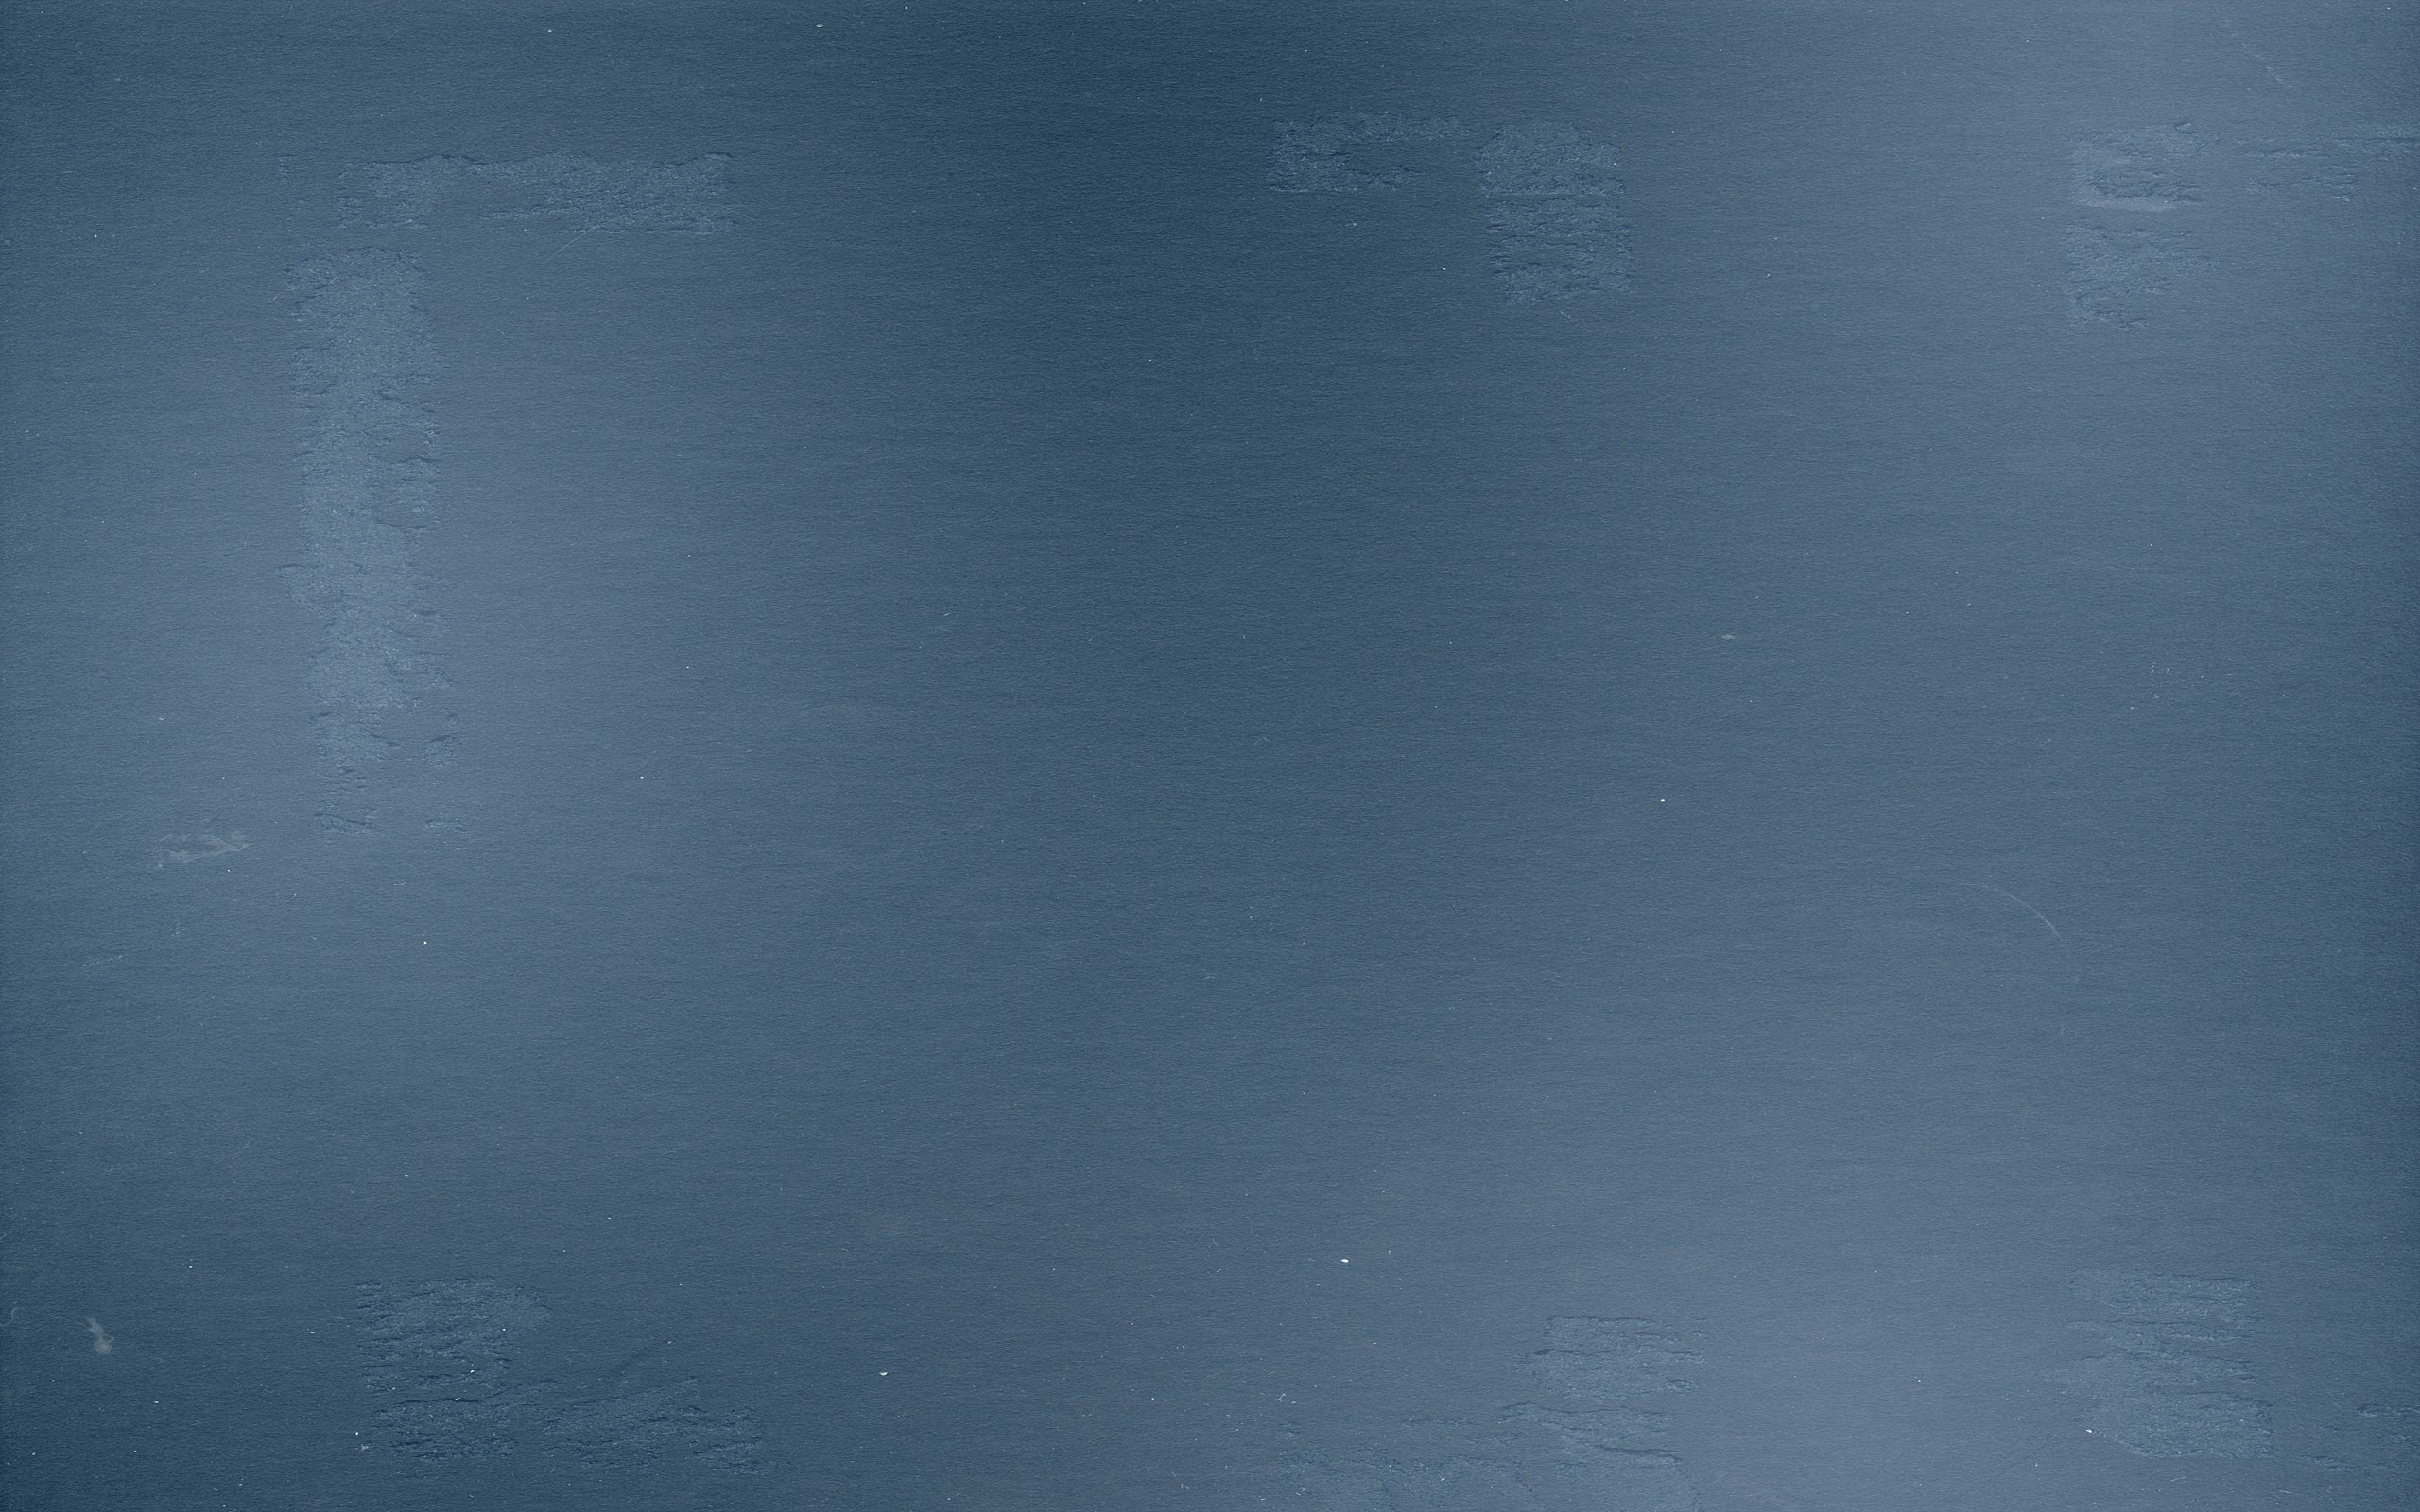 General 2560x1600 minimalism texture blue background simple background DeviantArt